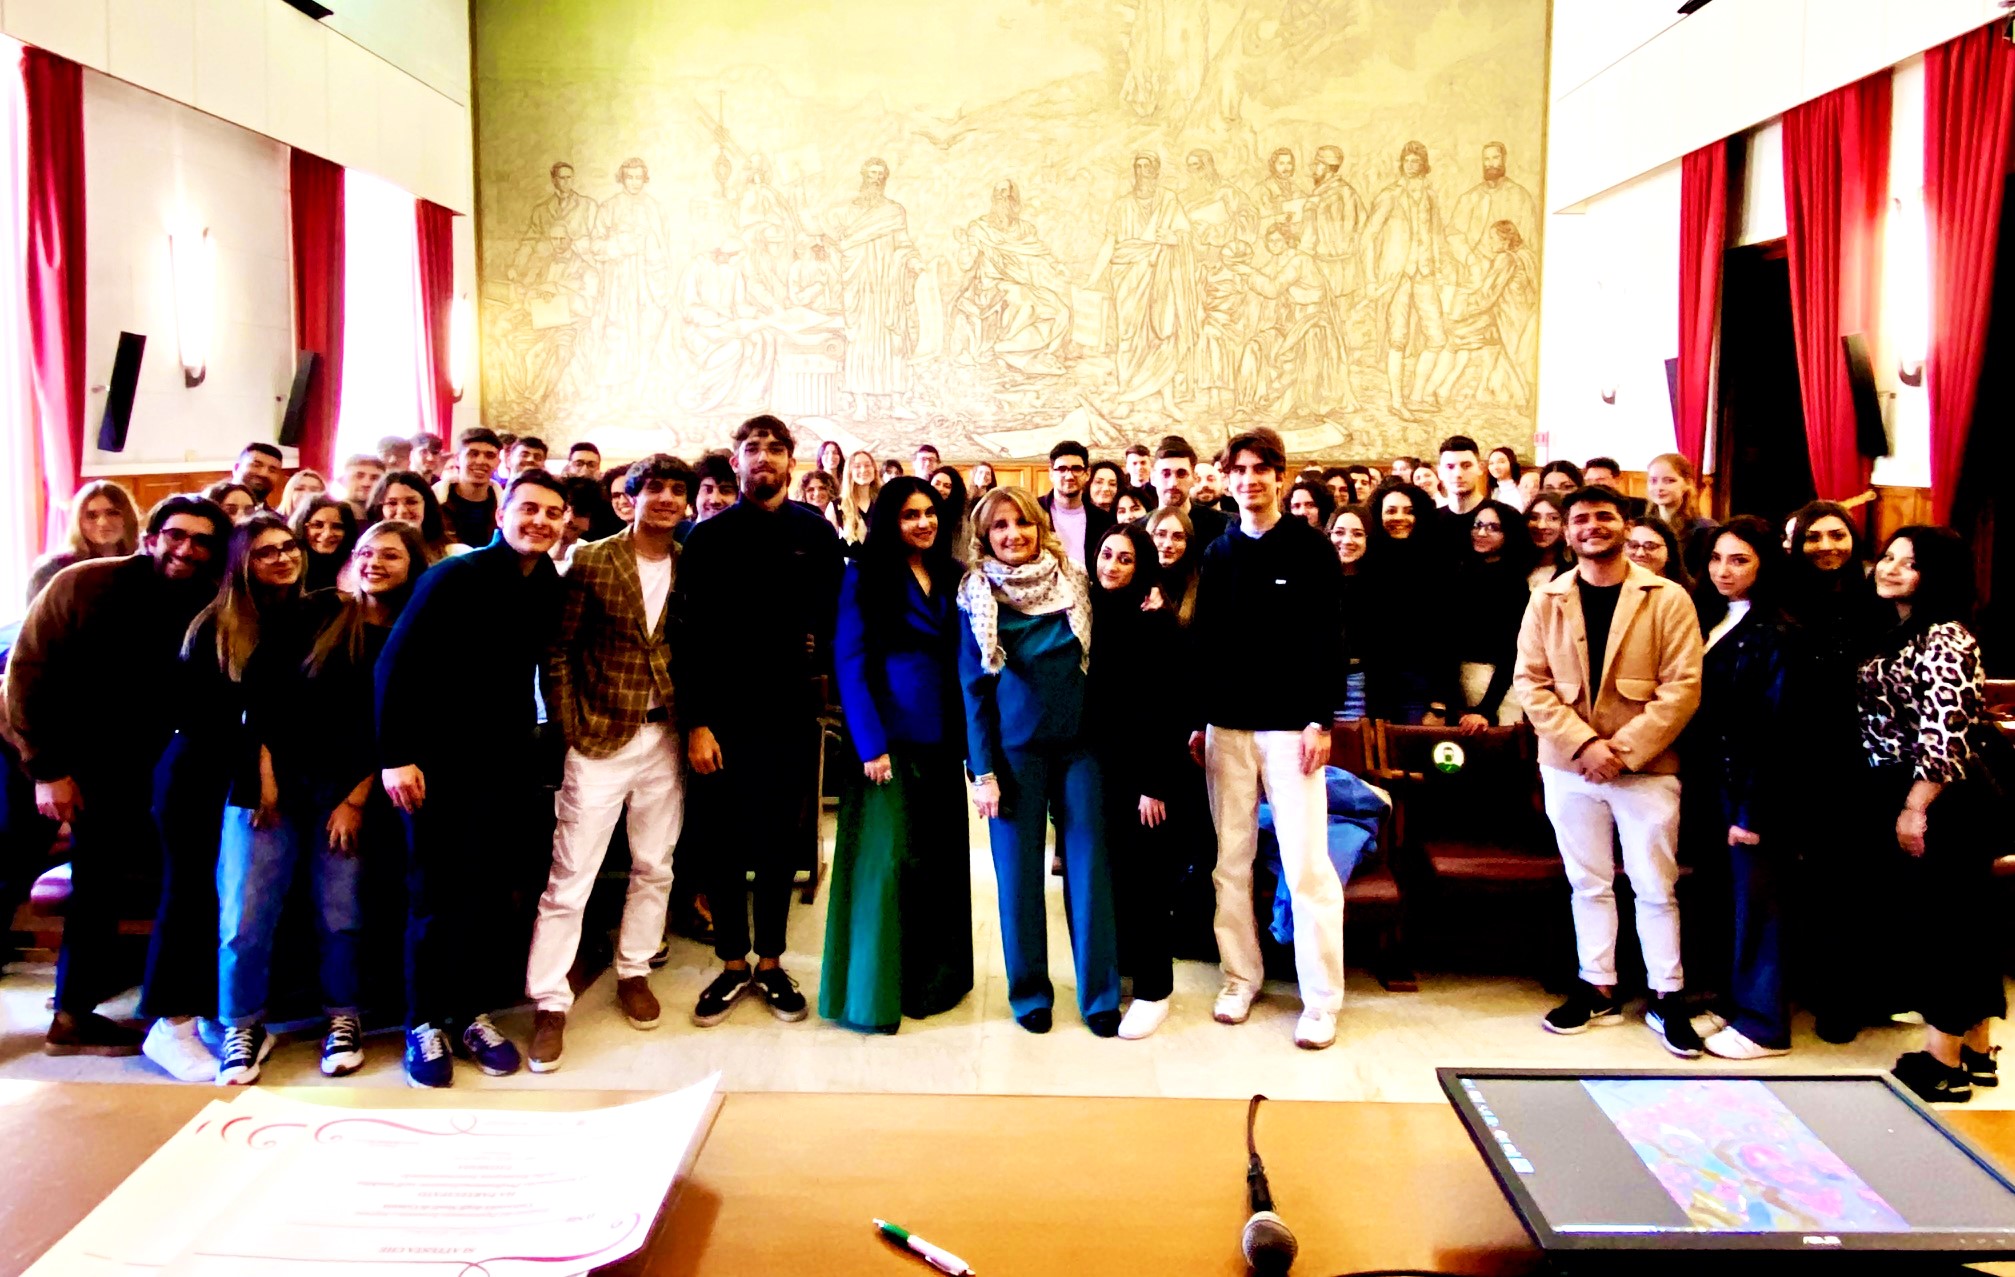 Studenti dell’università di Catania, protagonisti della rassegna internazionale Taomoda®